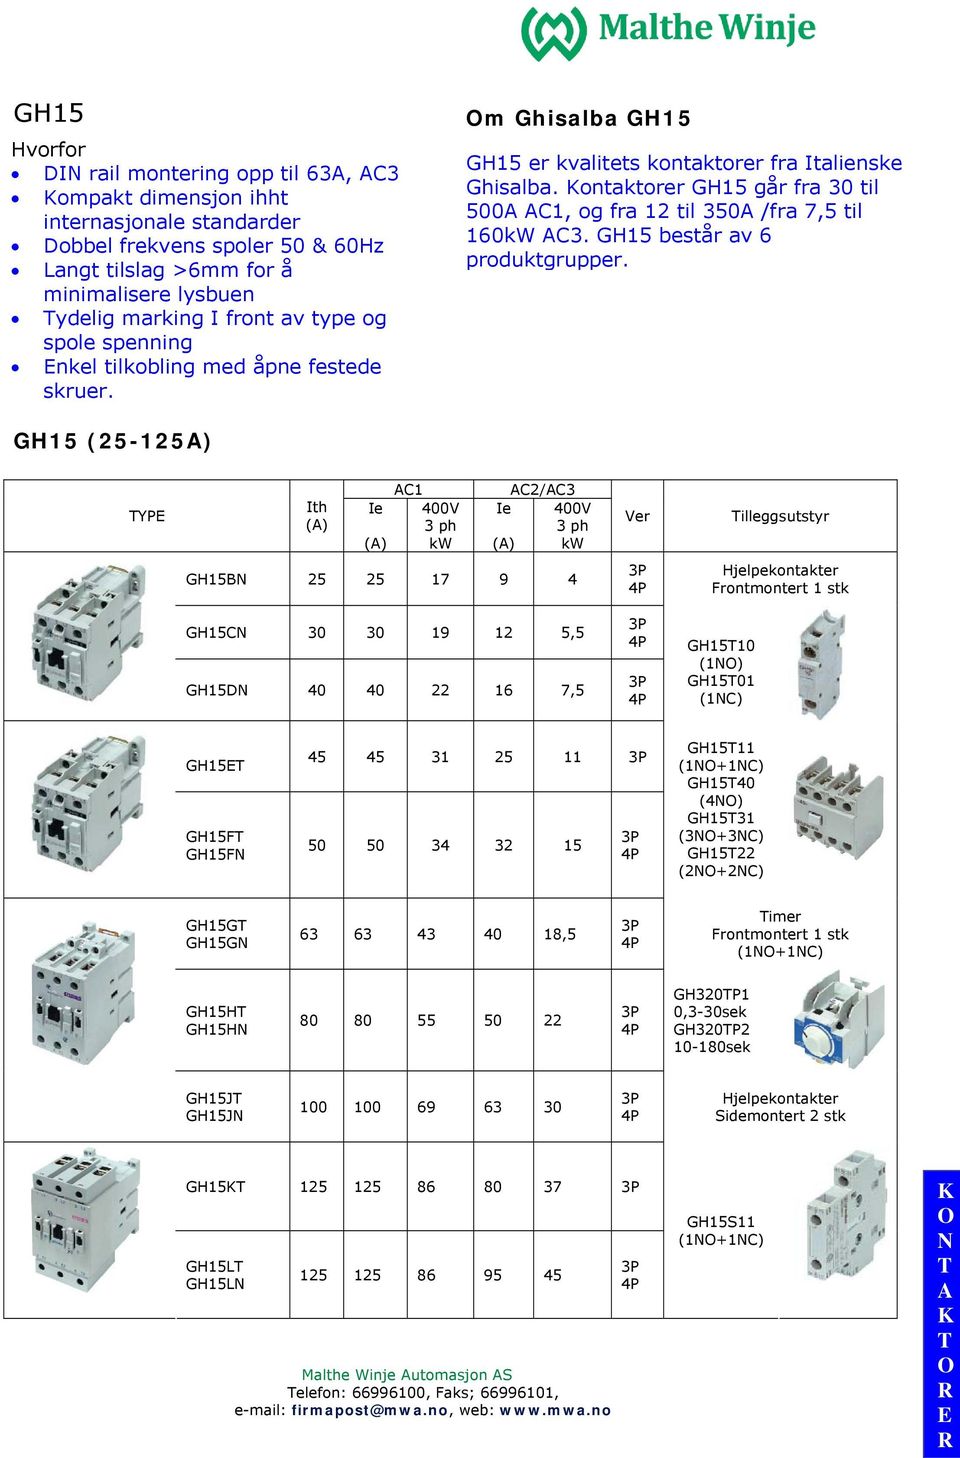 ontaktorer GH15 går fra 30 til 500 C1, og fra 12 til 350 /fra 7,5 til 160kW C3. GH15 består av 6 produktgrupper.